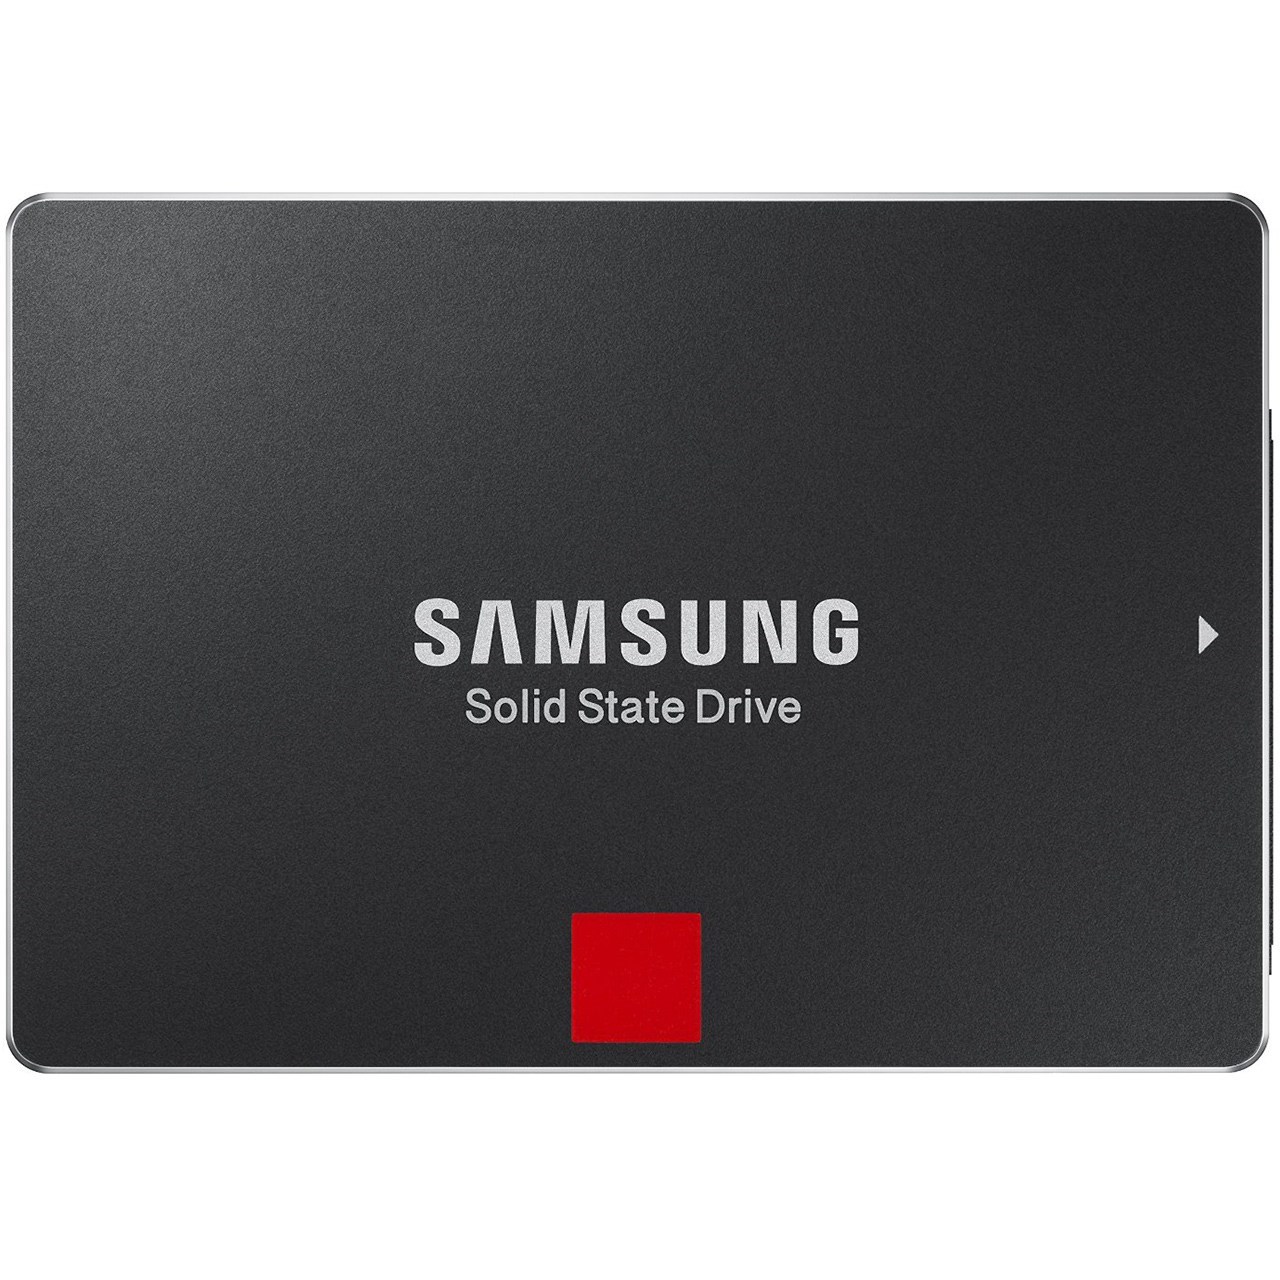 حافظه SSD سامسونگ مدل 850 پرو ظرفیت 512 گیگابایت